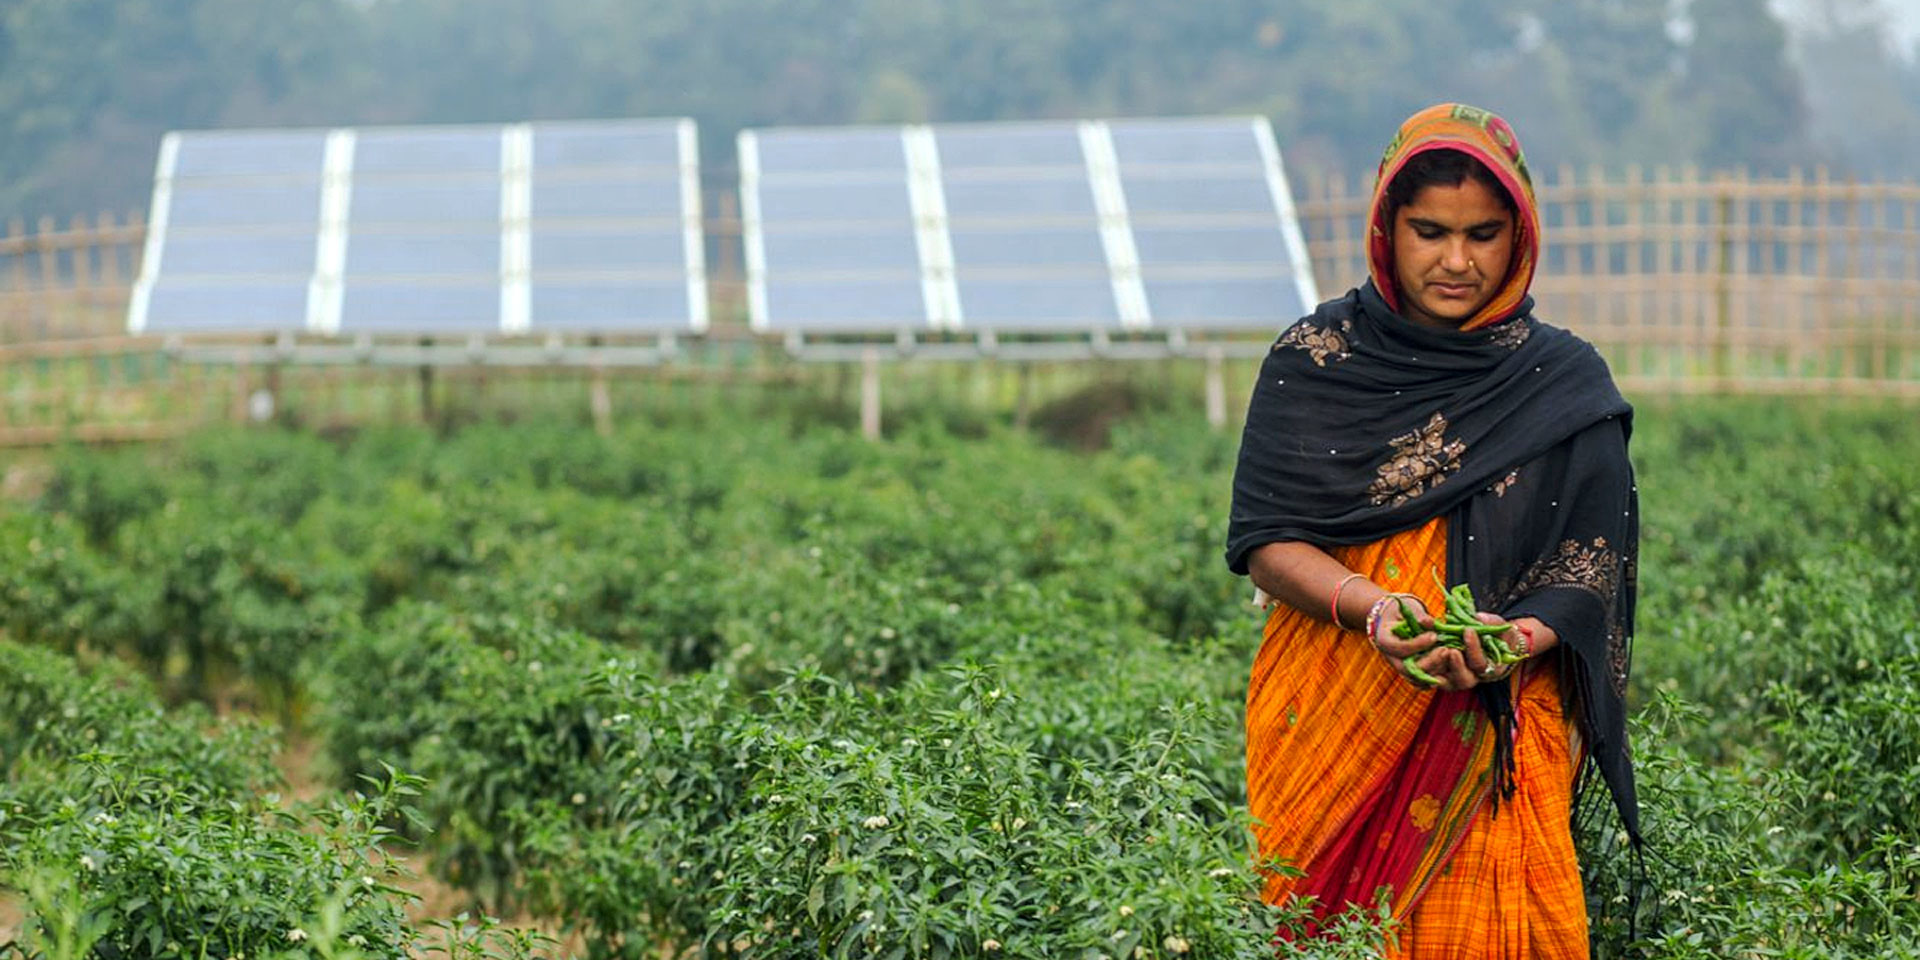 Una donna con un sari arancione raccoglie verdure fresche e verdi in una zona altrimenti arida. Sullo sfondo si vedono alcuni pannelli solari.